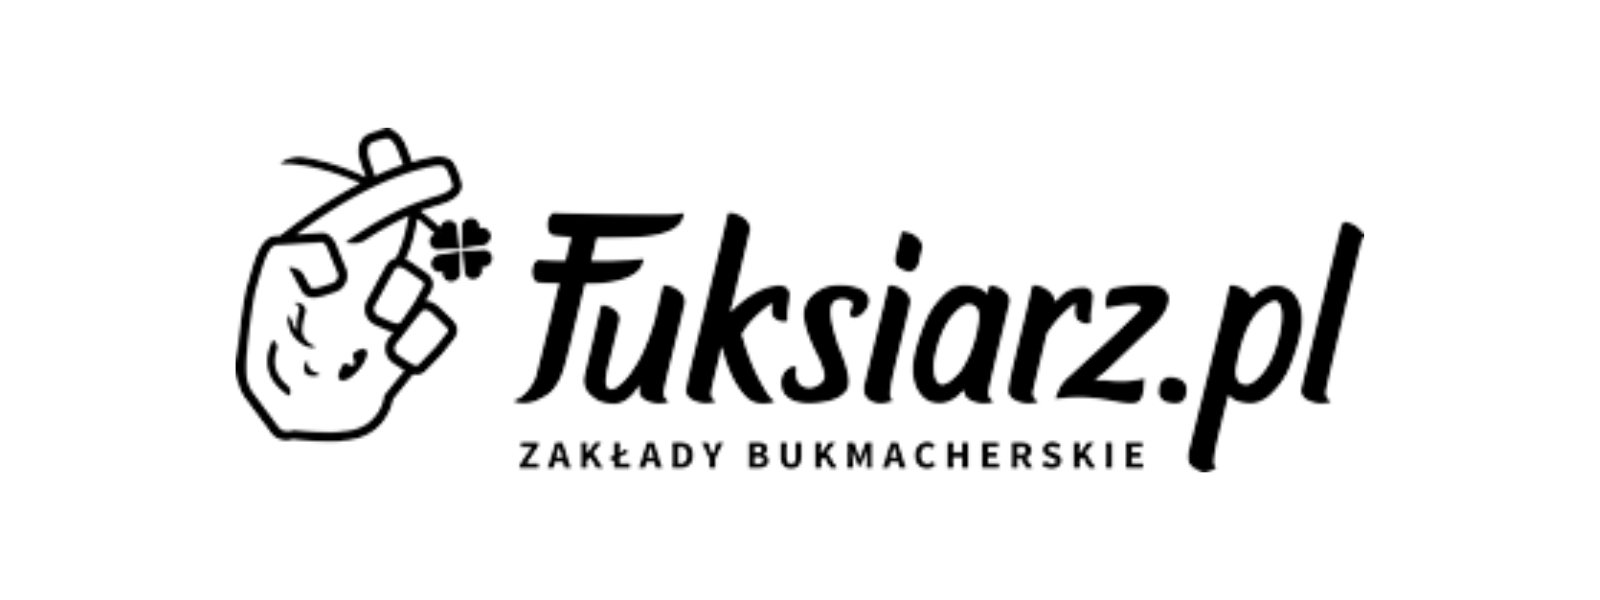 Fuksiarz - legalny polski bukmacher